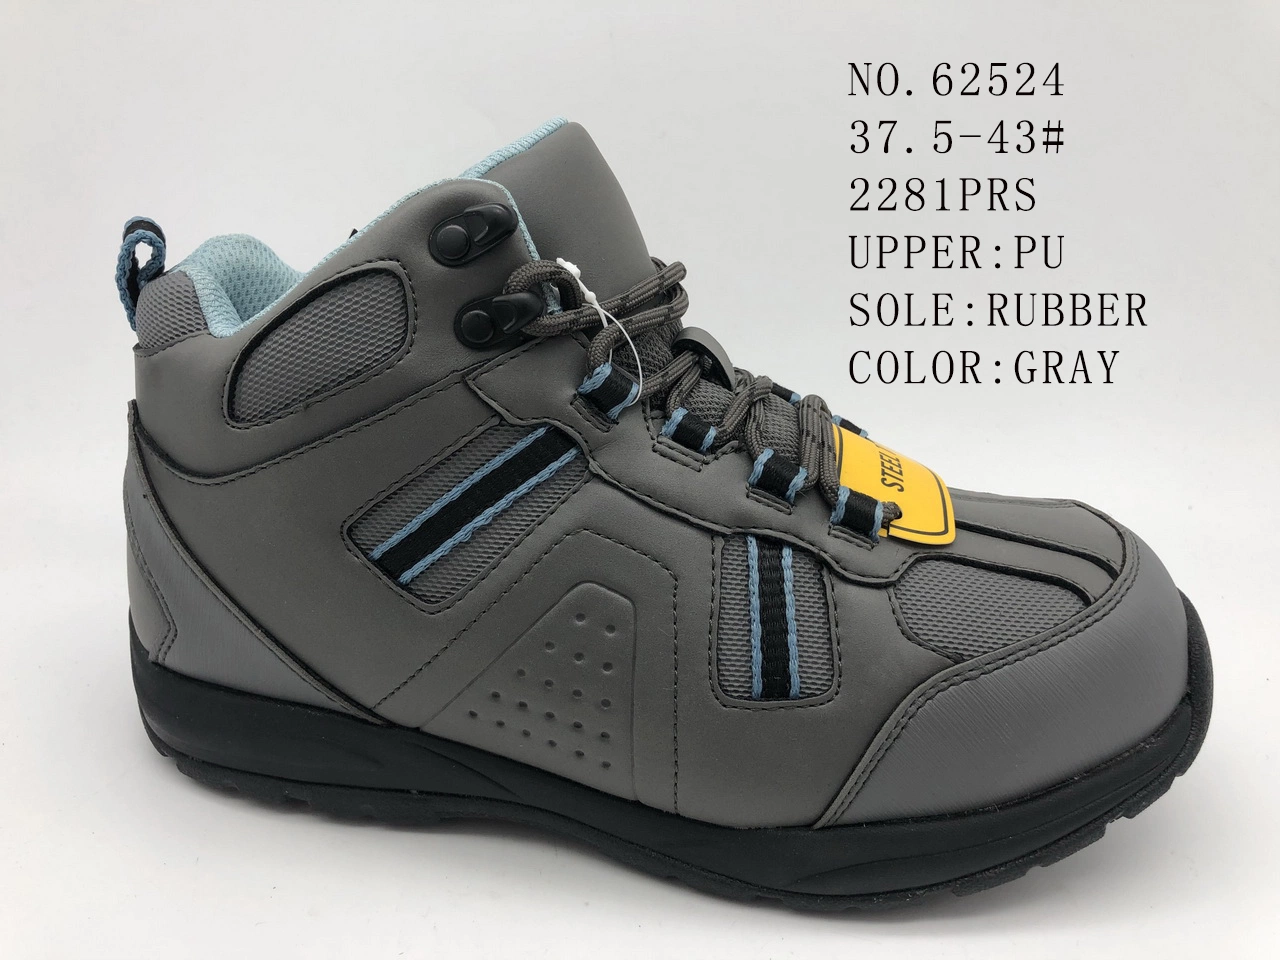  Los hombres grises PU Calzado con suela de caucho zapatos calzado casual (No. 62524 )